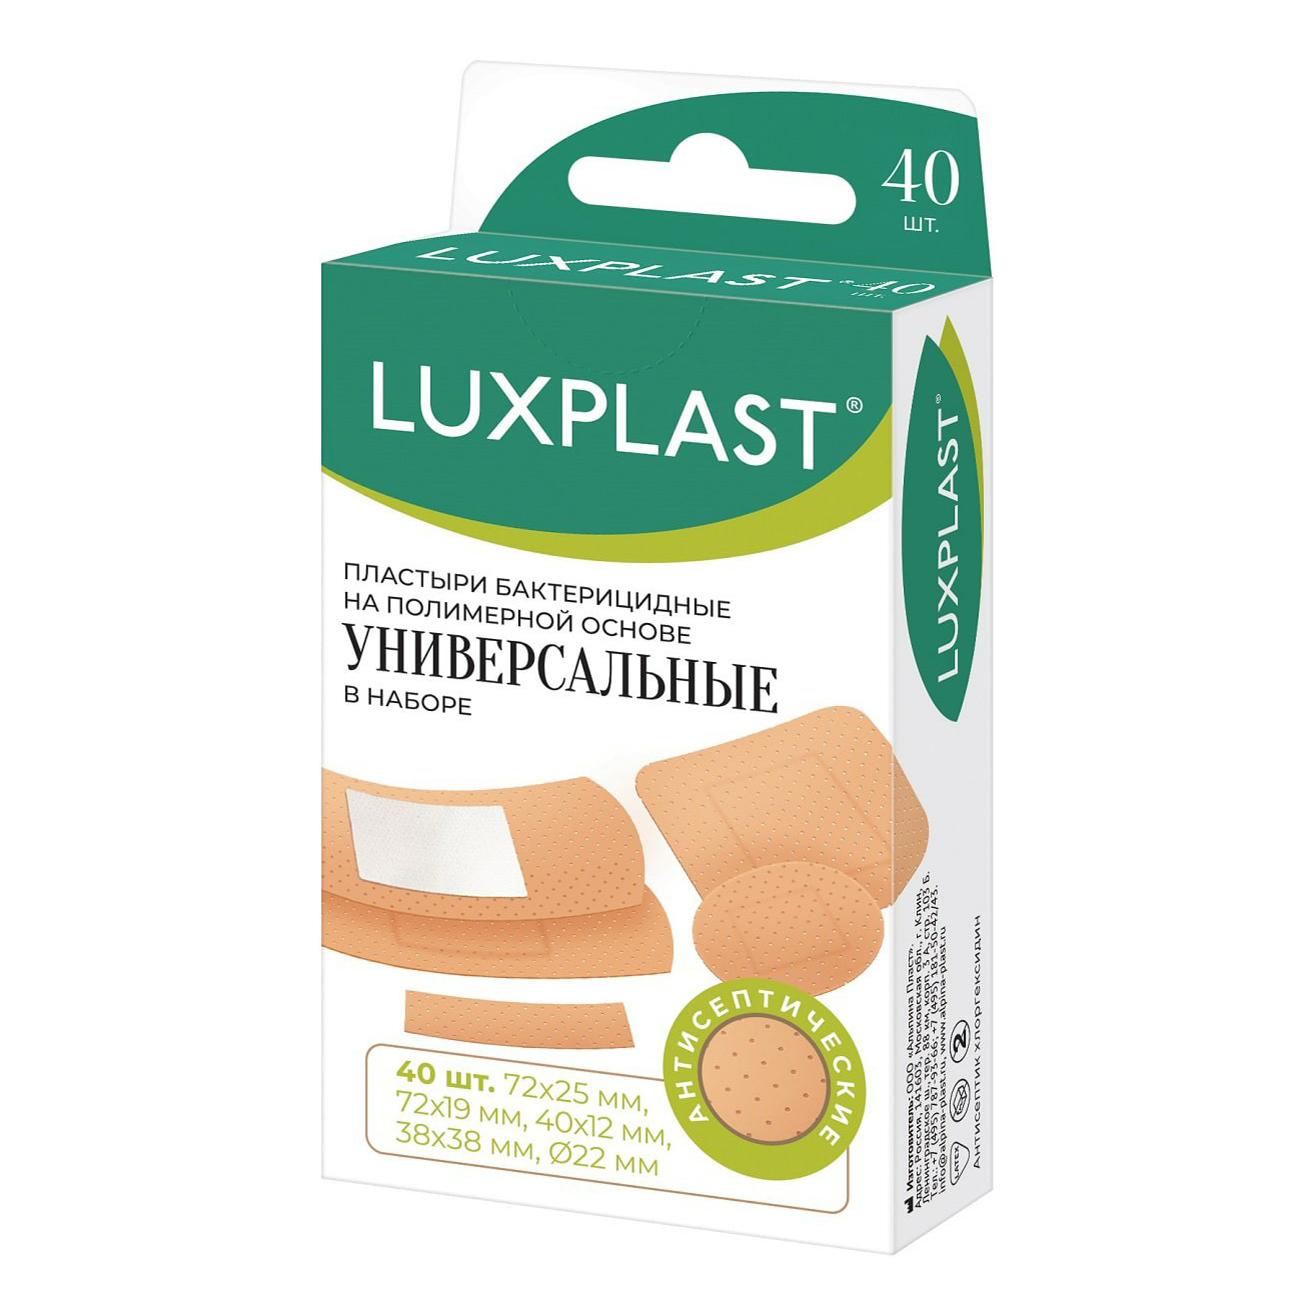 Купить Пластыри Luxplast универсальные на полимерной основе 40 шт.